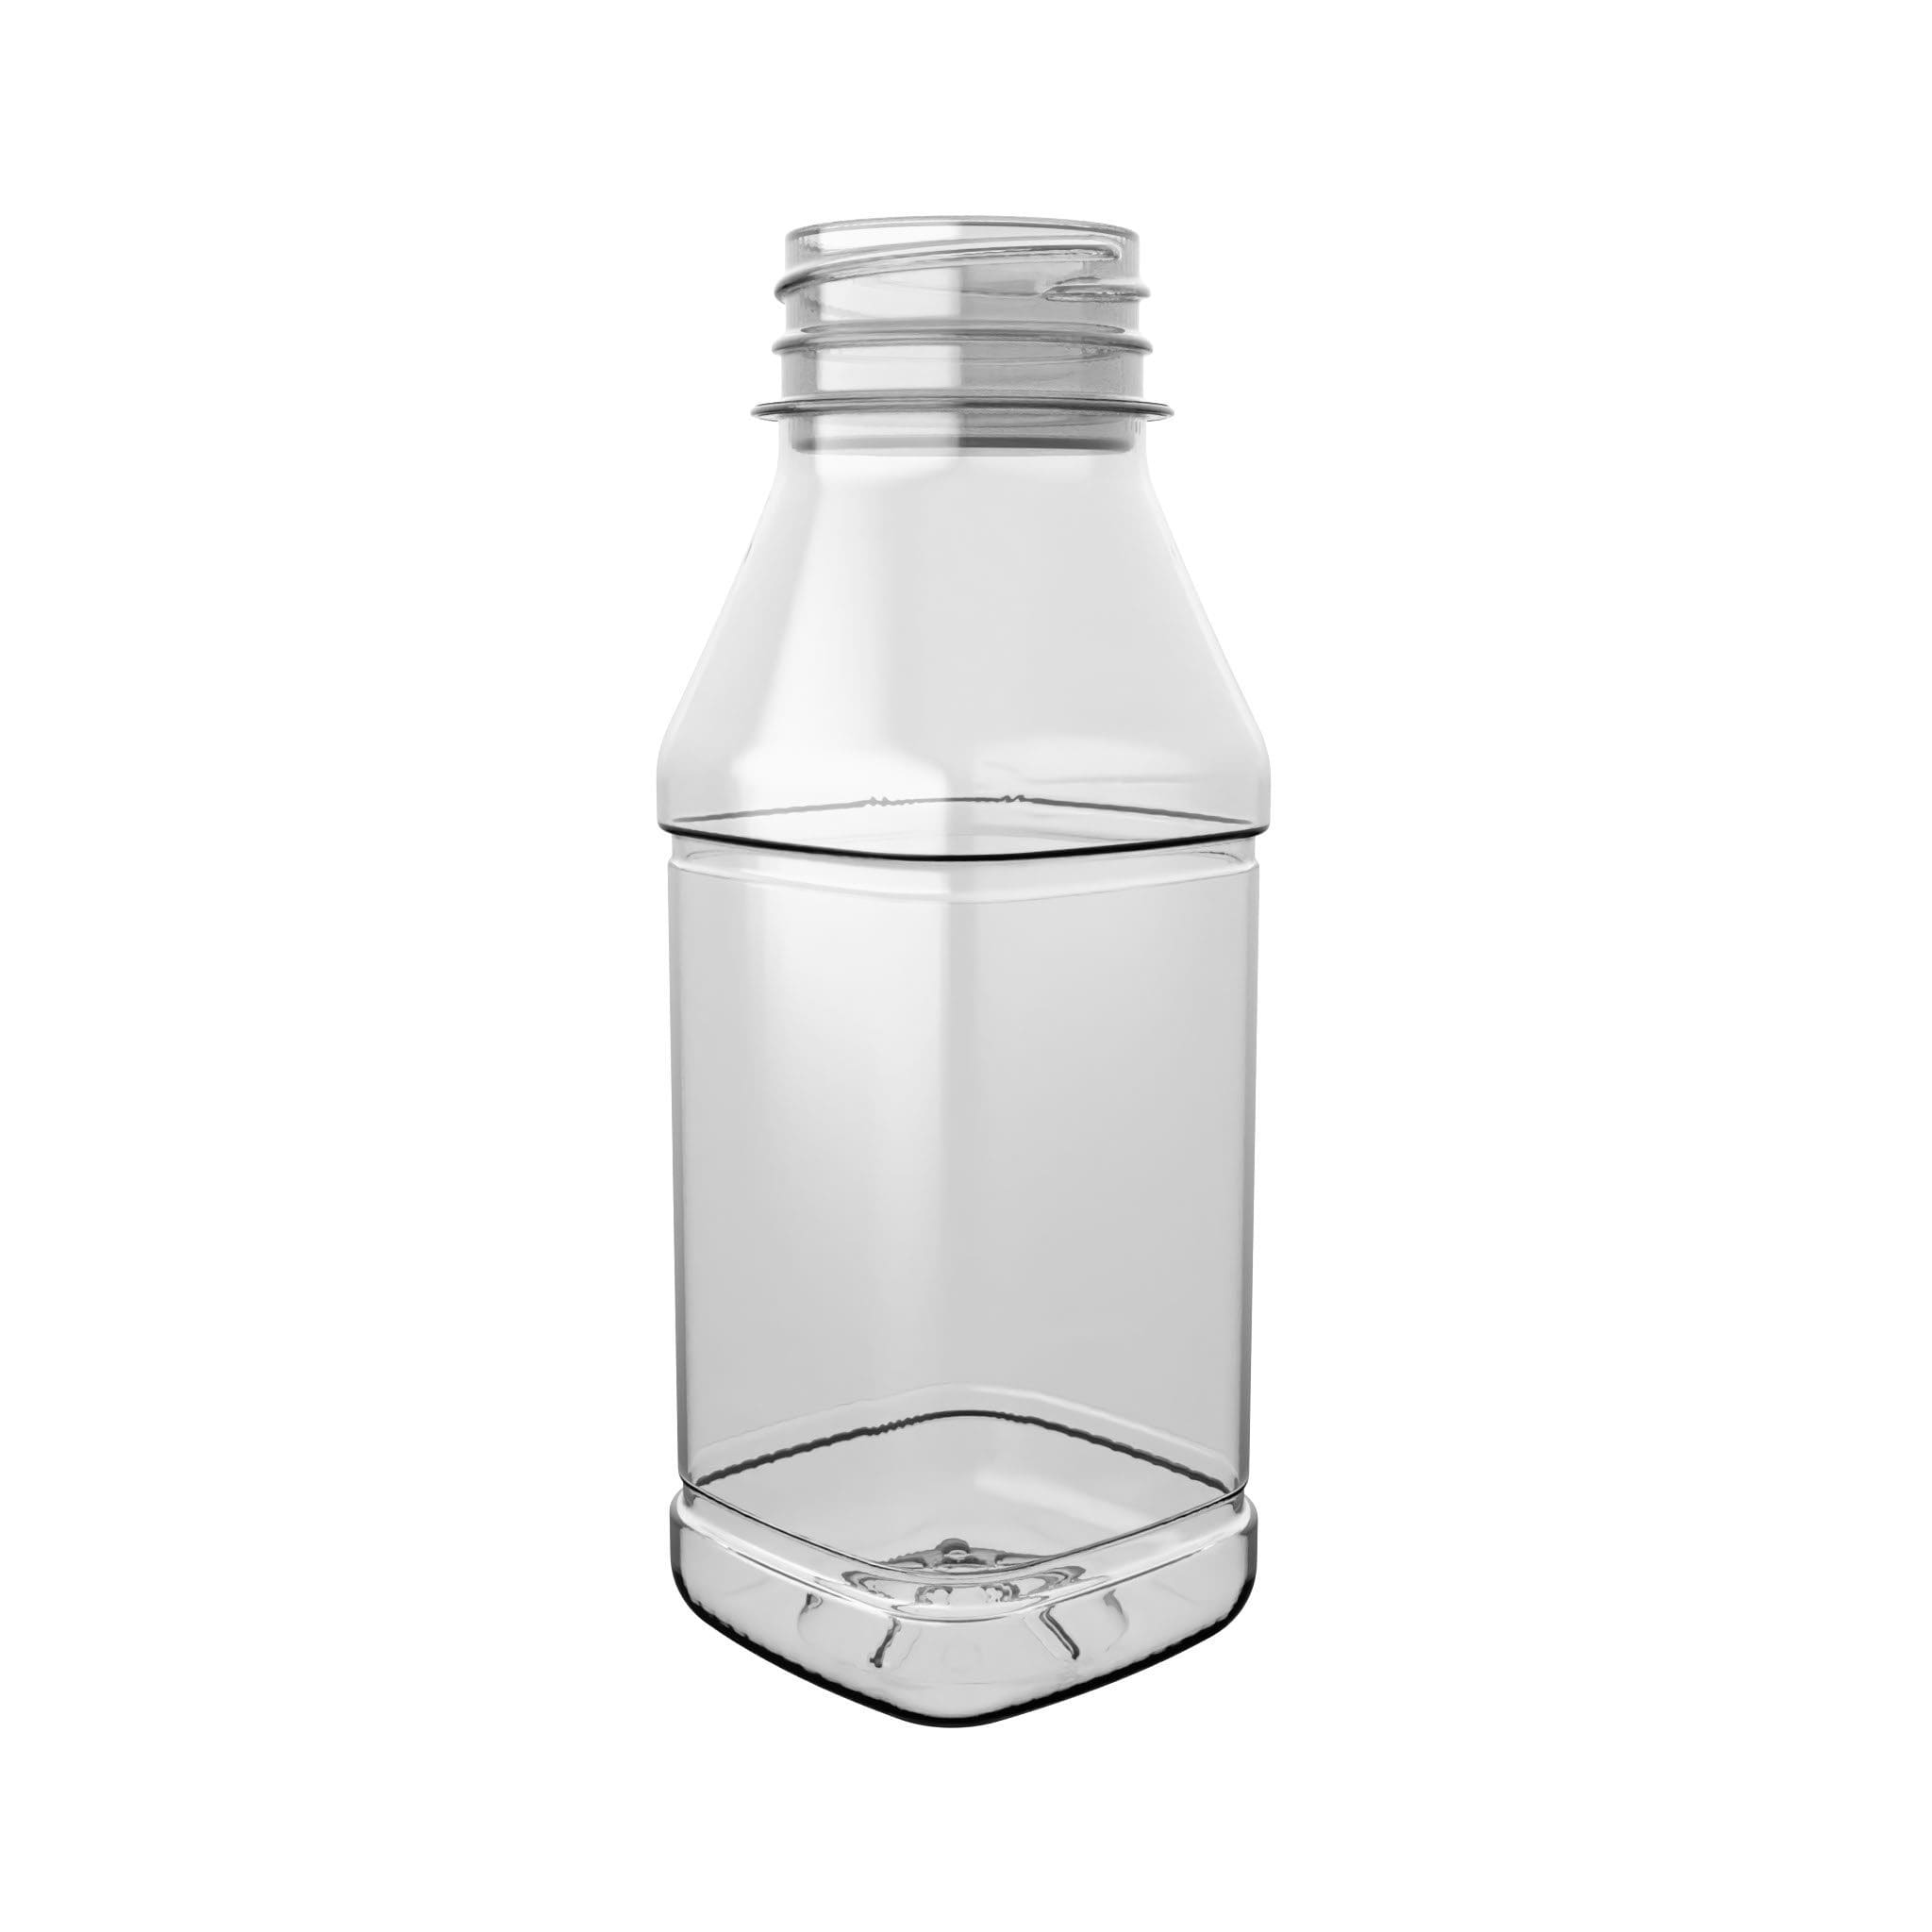 EPROJUICE SQUARE PET-Flasche von EPROPLAST in quadratischer Form.